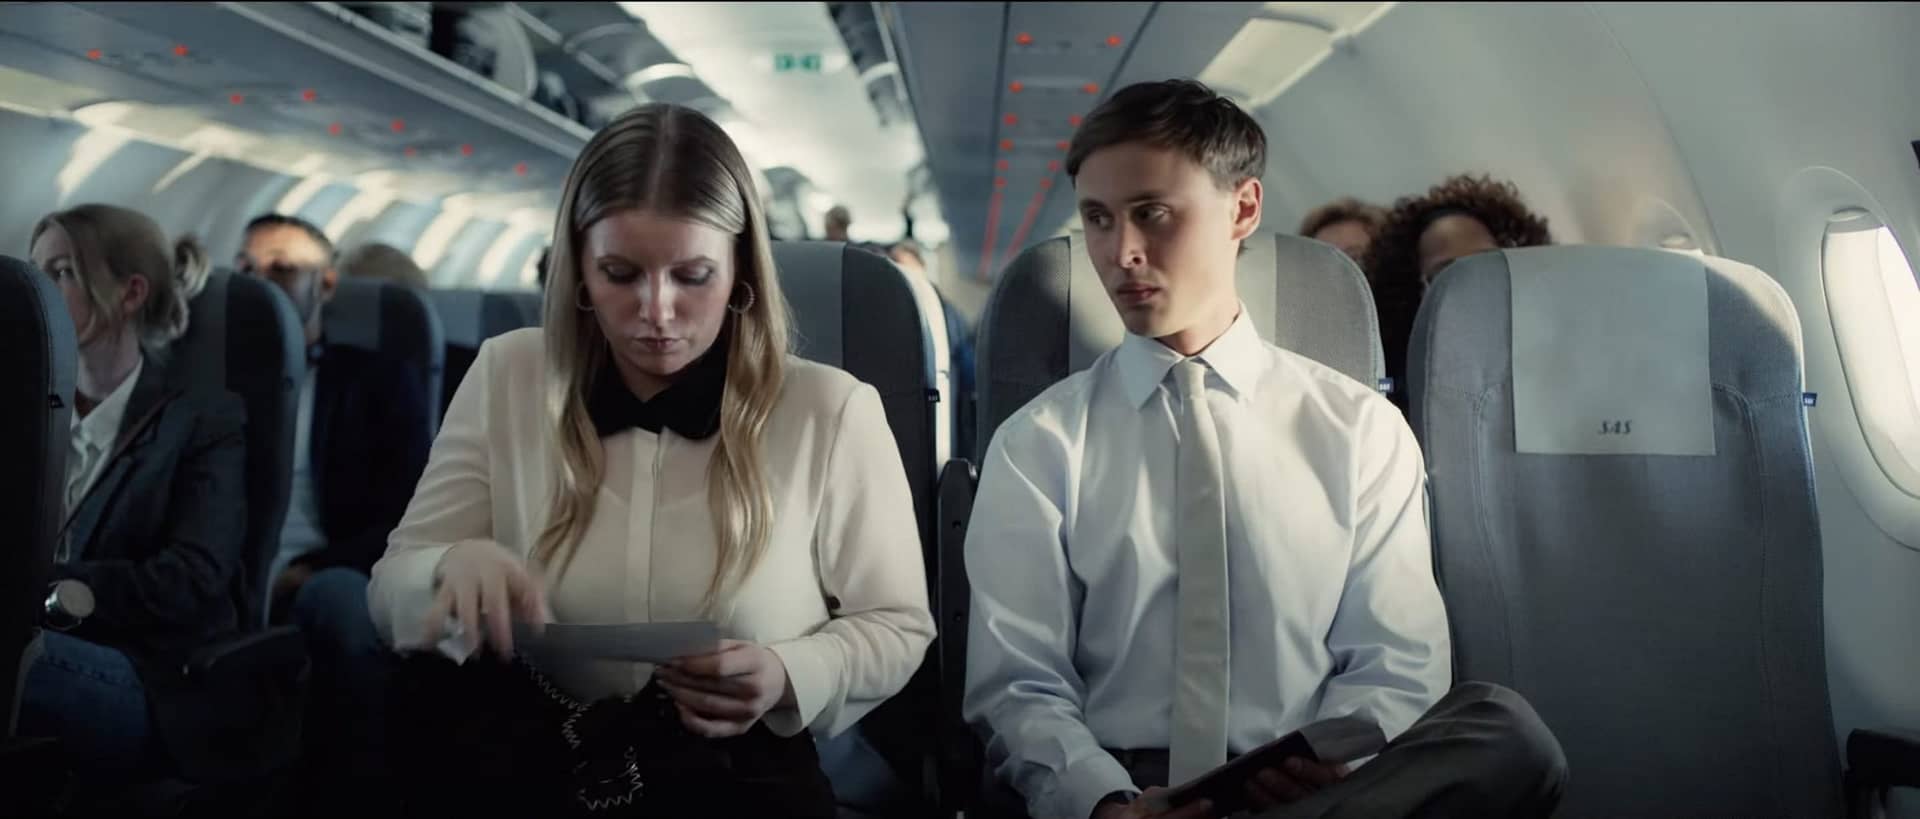 Scandinavian Airlines Journeys That Matter 2022 Ads